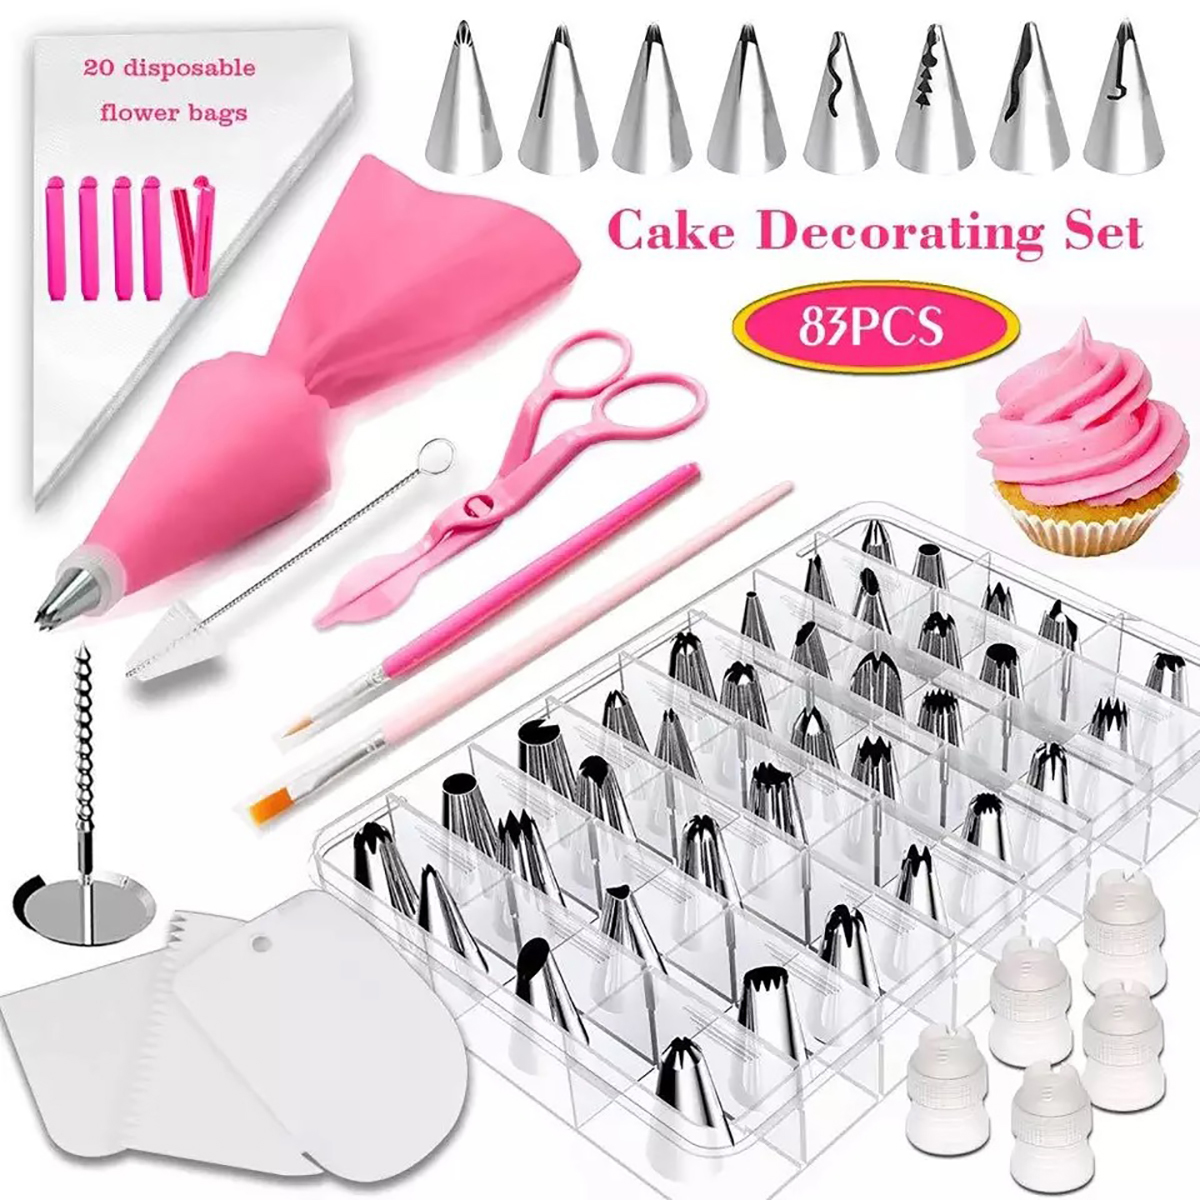 38727883-PCS-Cake-Decorating-Supplies-Kits-Pastry-Supplies-DIY-Tools-1849126-2